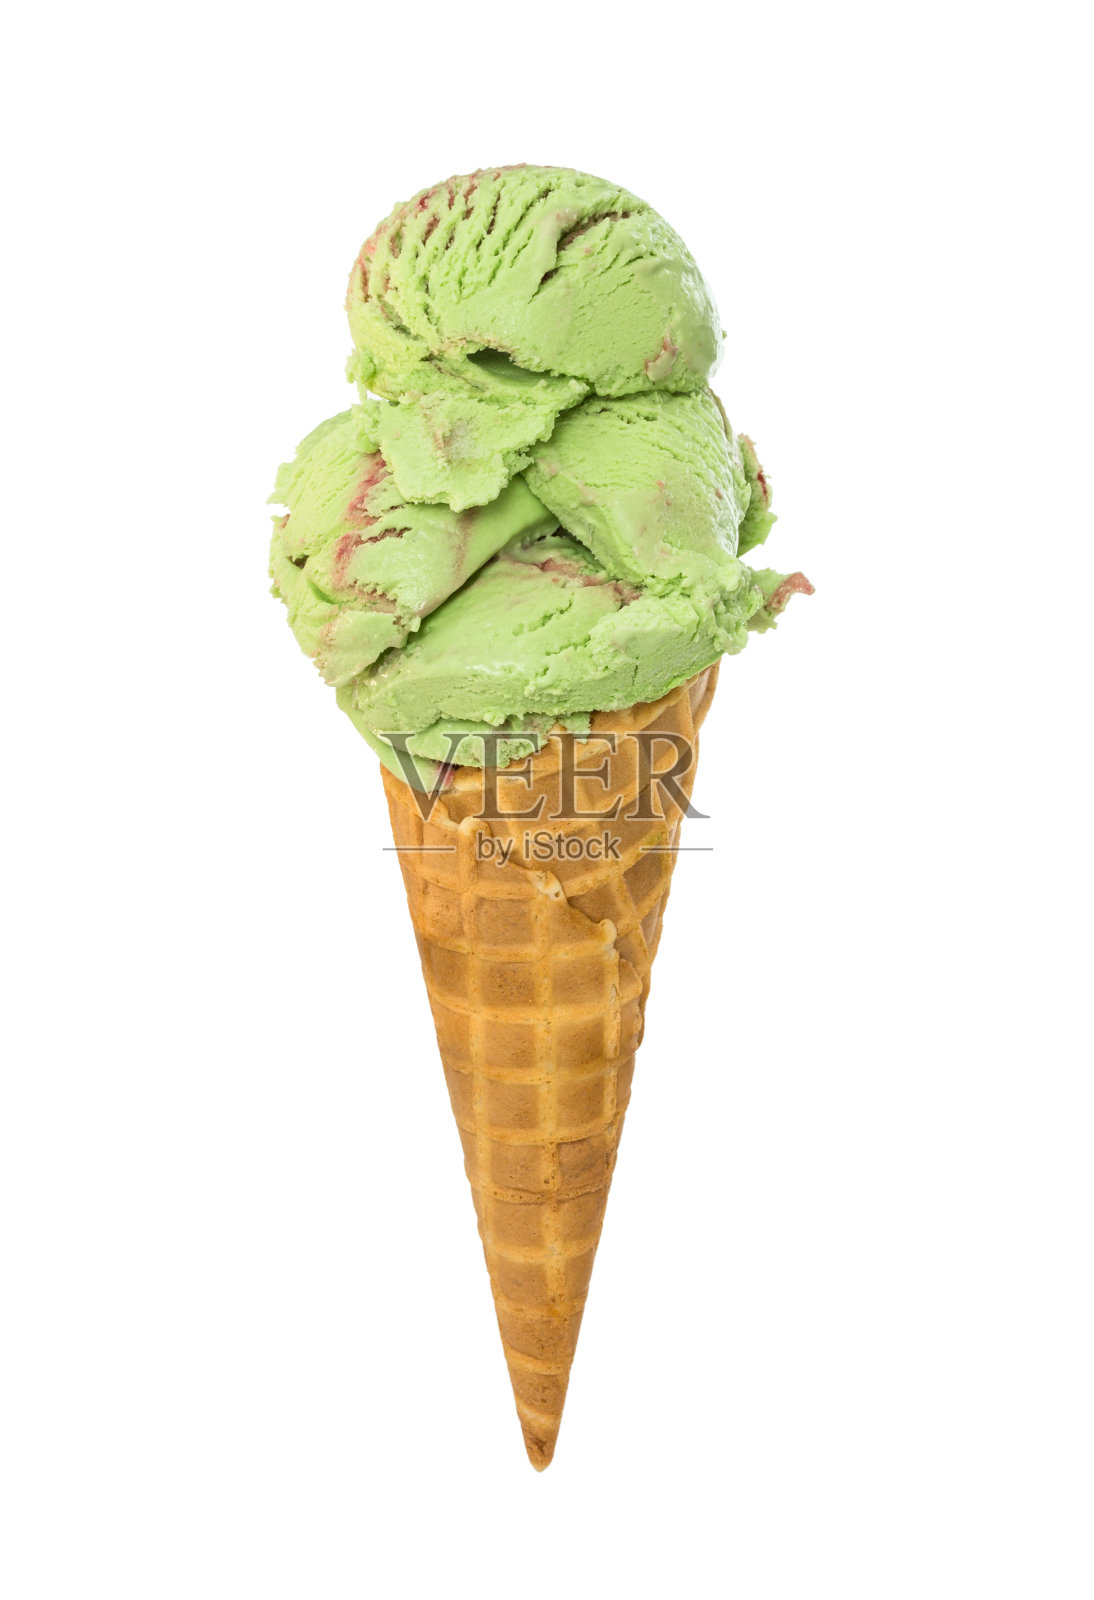 薄荷覆盆子冰淇淋在华夫蛋筒孤立的白色照片摄影图片